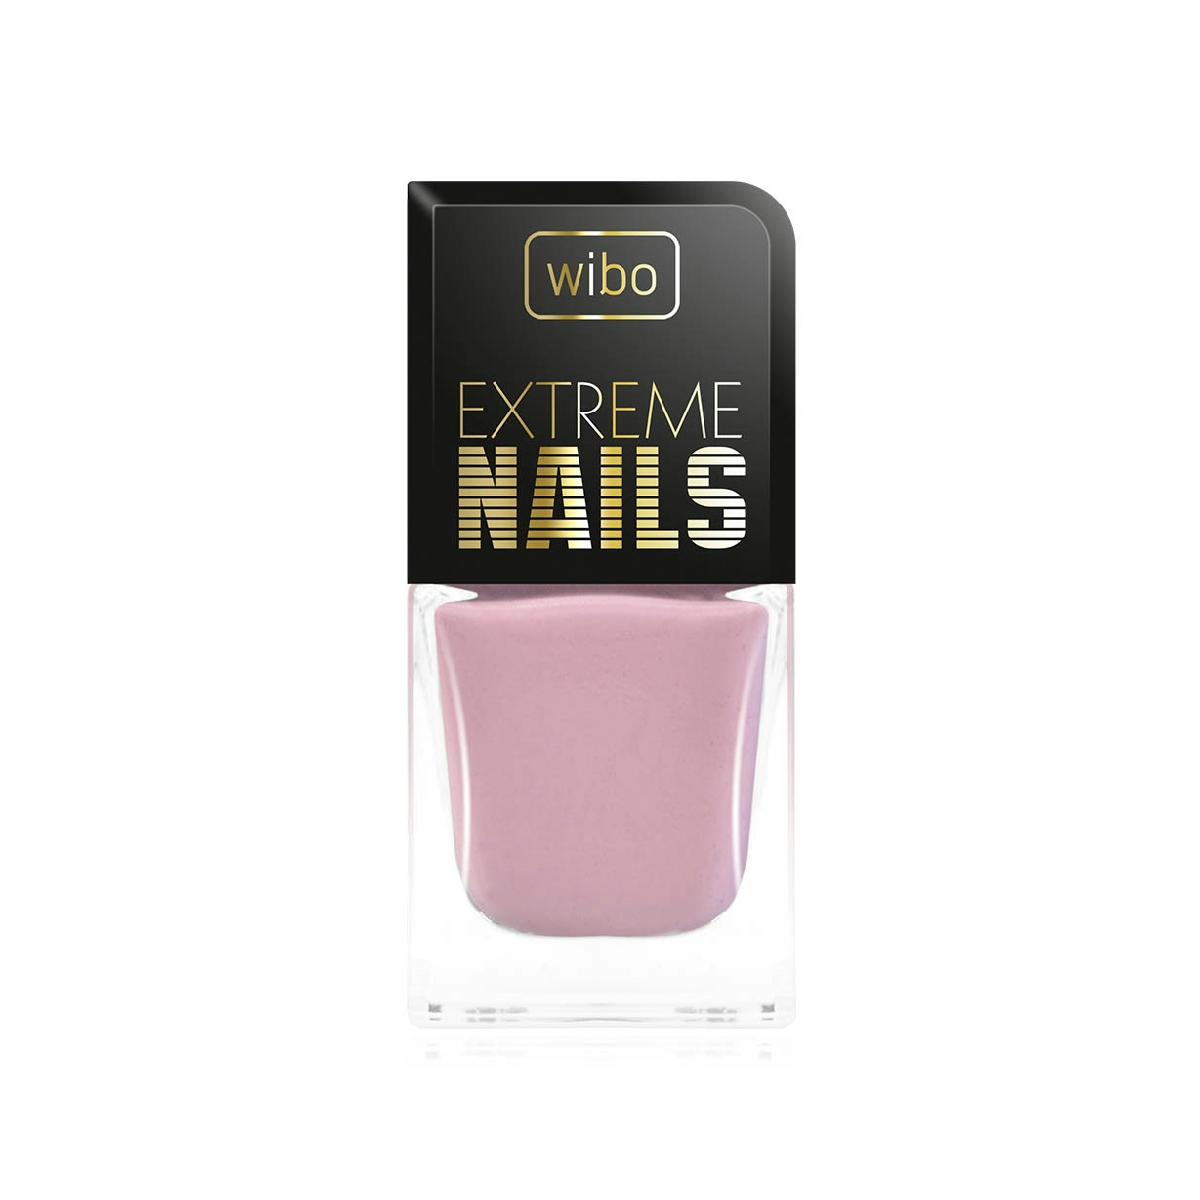 Esmalte de Uñas Extreme Nails - 181 WIBO